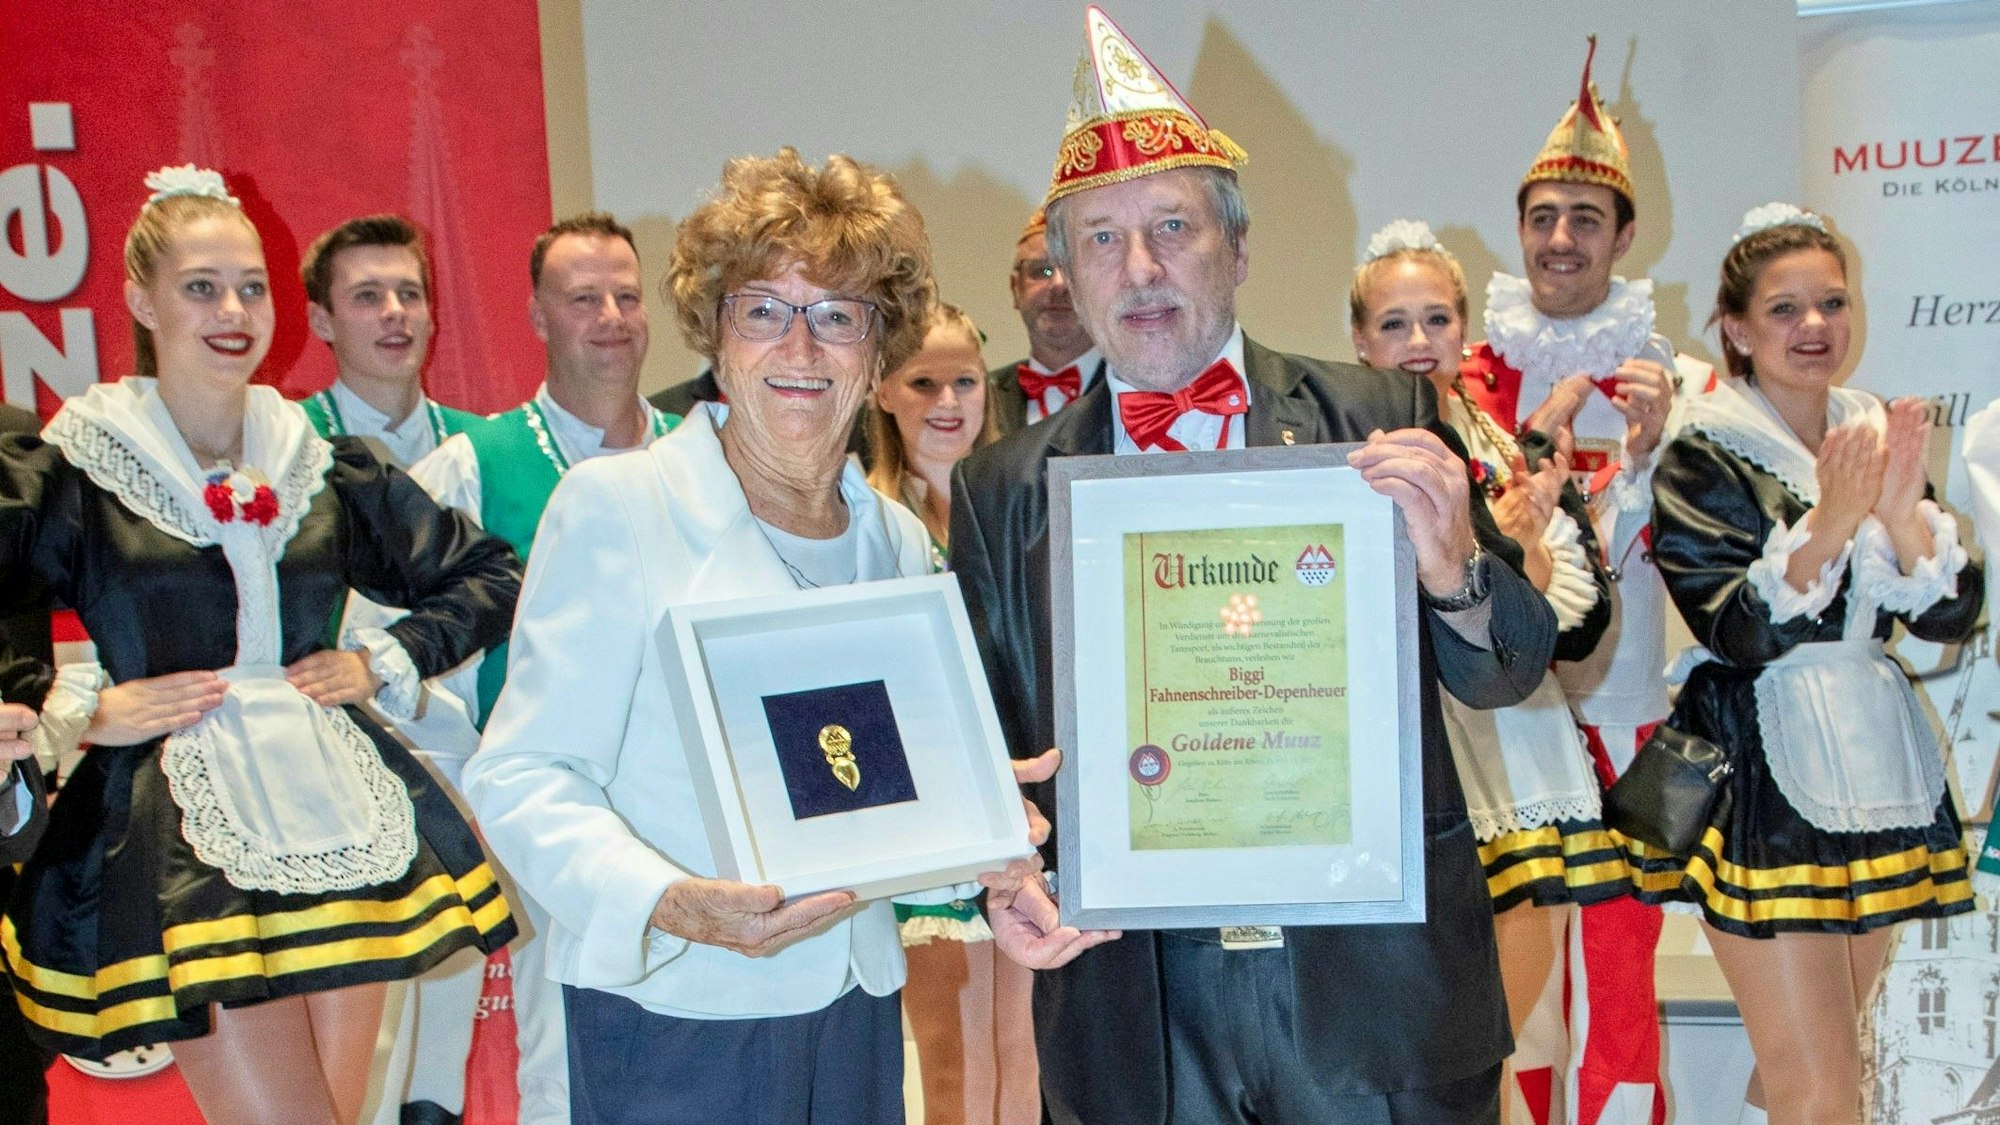 Biggi Fahnenschreiber-Depenheuer erhielt die Auszeichnung „Goldene Muuz“.